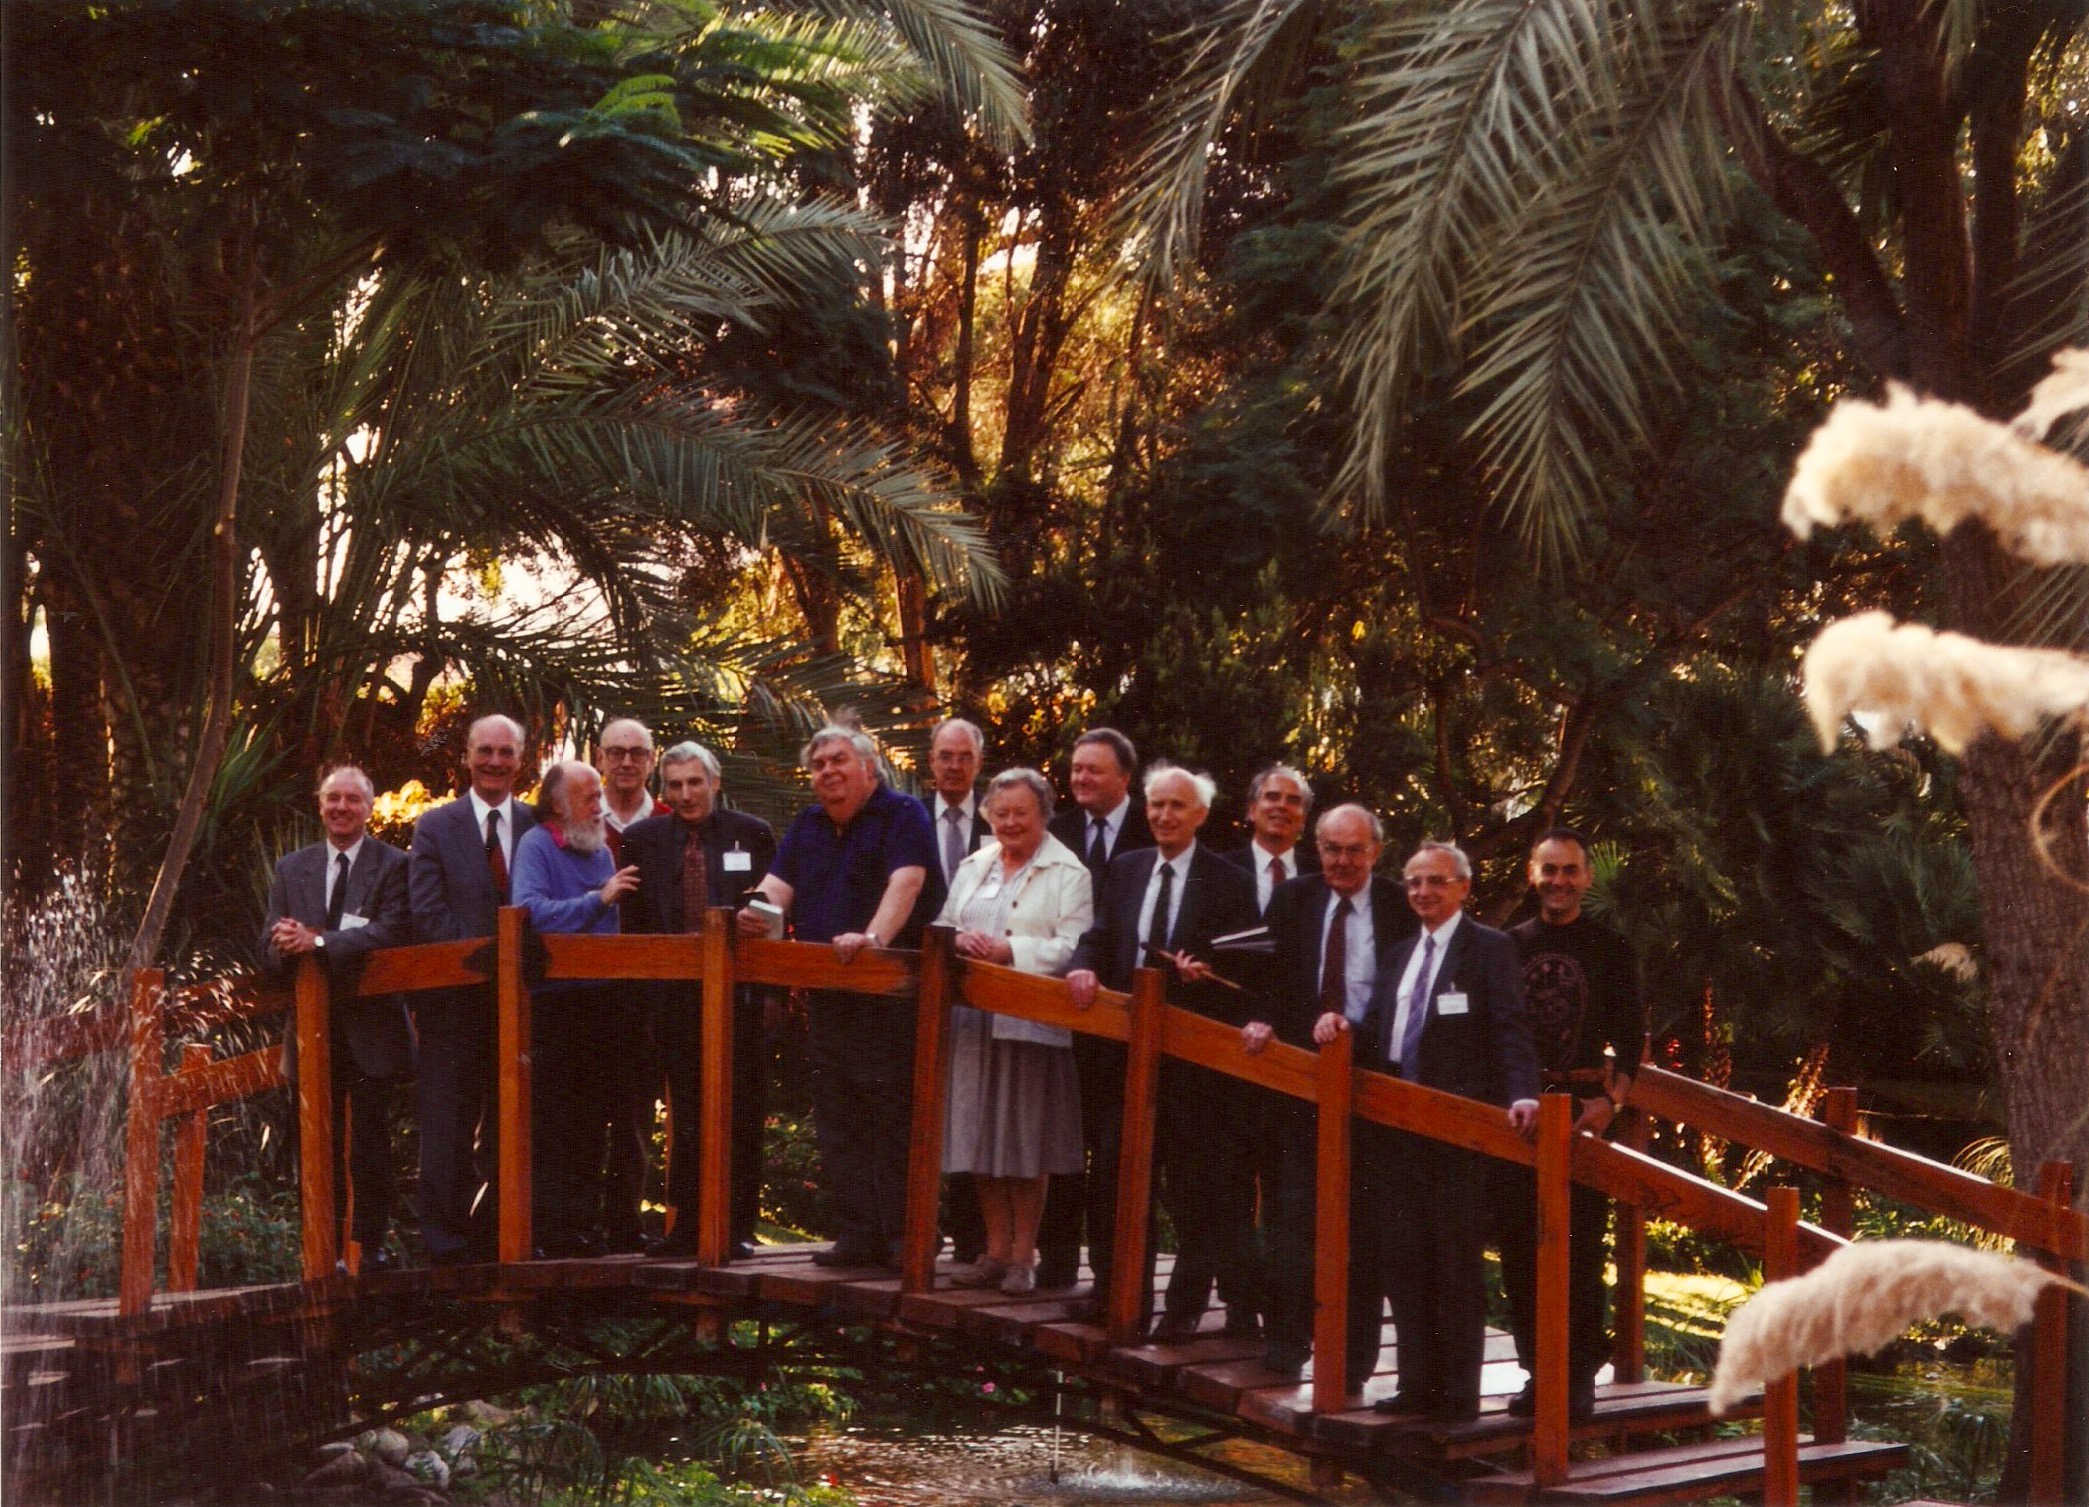 Participantes del encuentro “Key Problems in Astronomy”, celebrado en 1995 en Tenerife